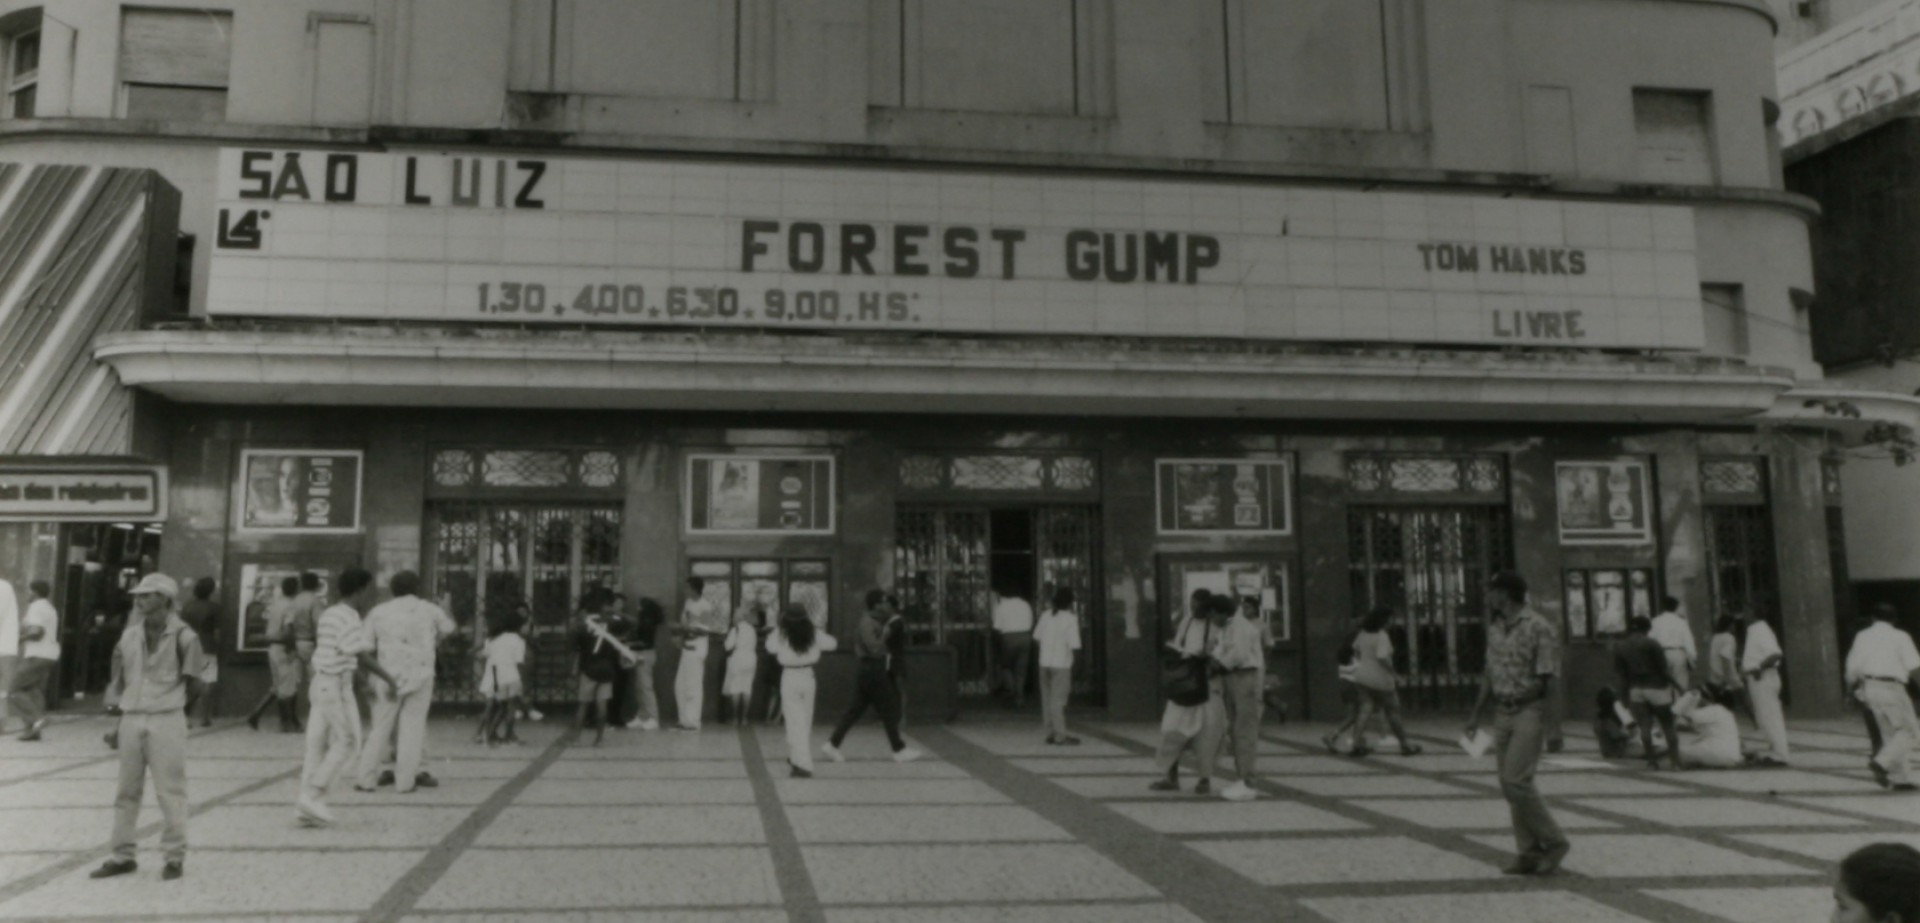 Fachada do Cine São Luiz anunciando Forrest Gump, filme de 1994 (Foto: Everton Lemos, em 20/10/1994)